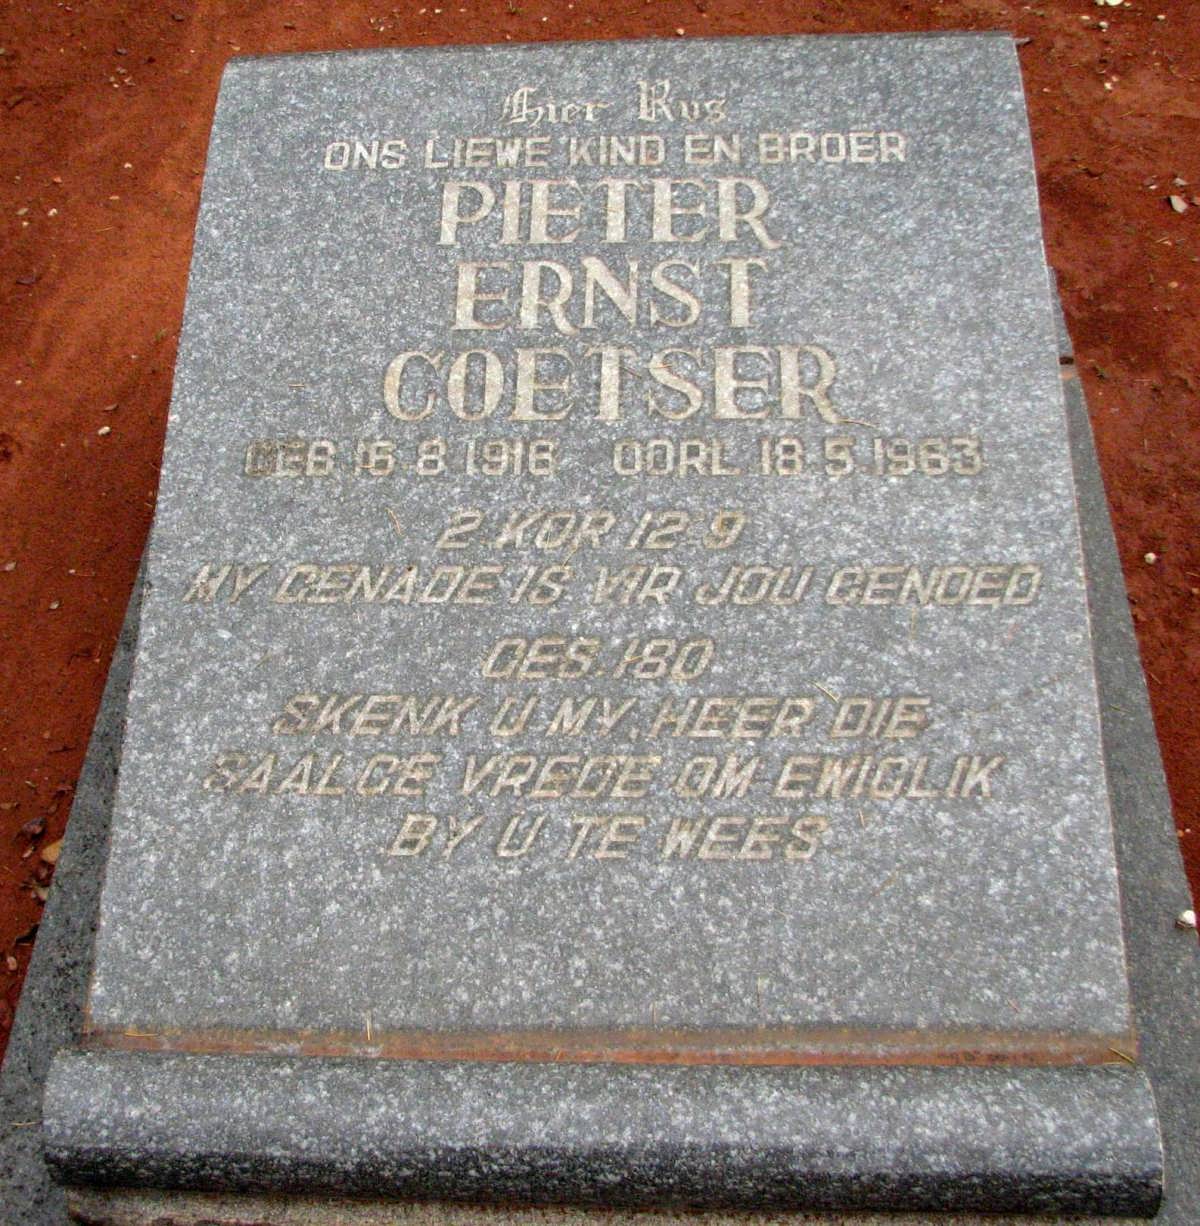 COETSER Pieter Ernst 1916-1963